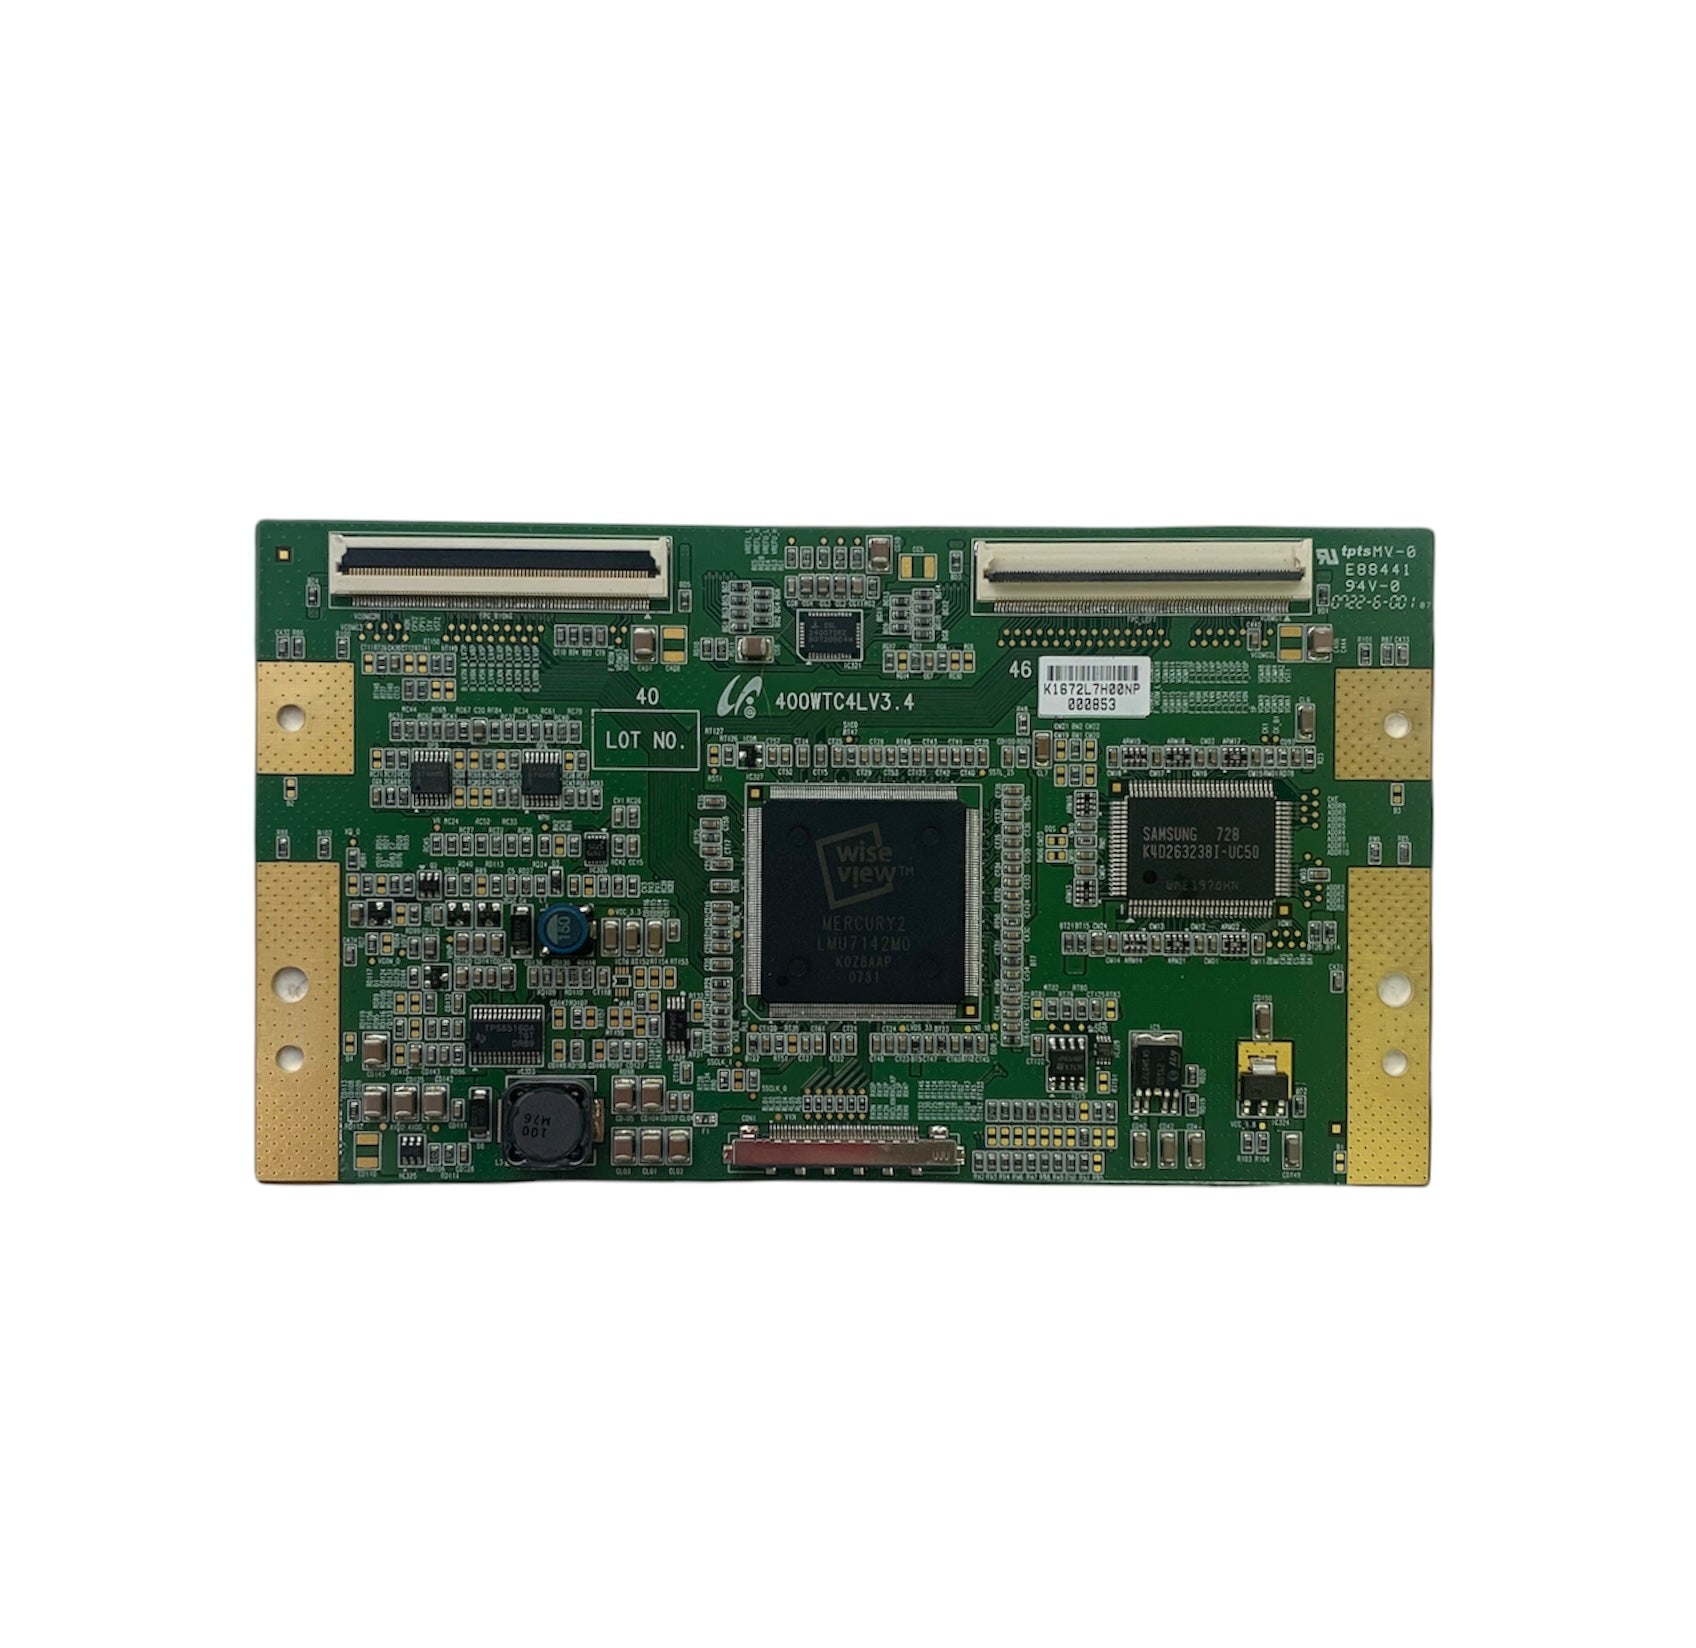 Sony LJ94-01672L (400WTC4LV3.4) T-Con Board for KDL-46S3000